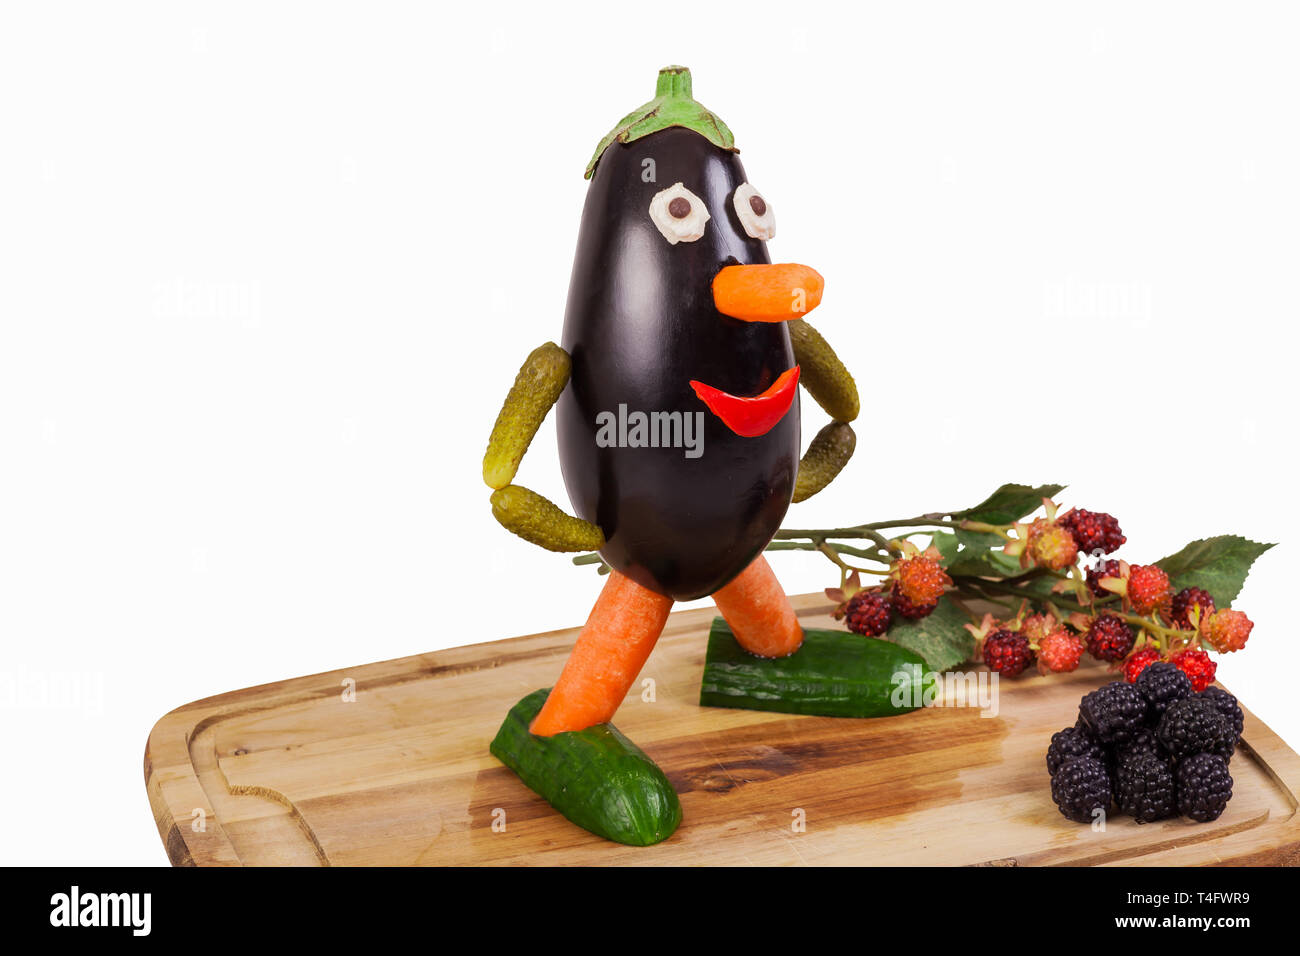 Funny figure taillée d'une aubergine avec deco fruits sur une planche en bois isolé- Banque D'Images